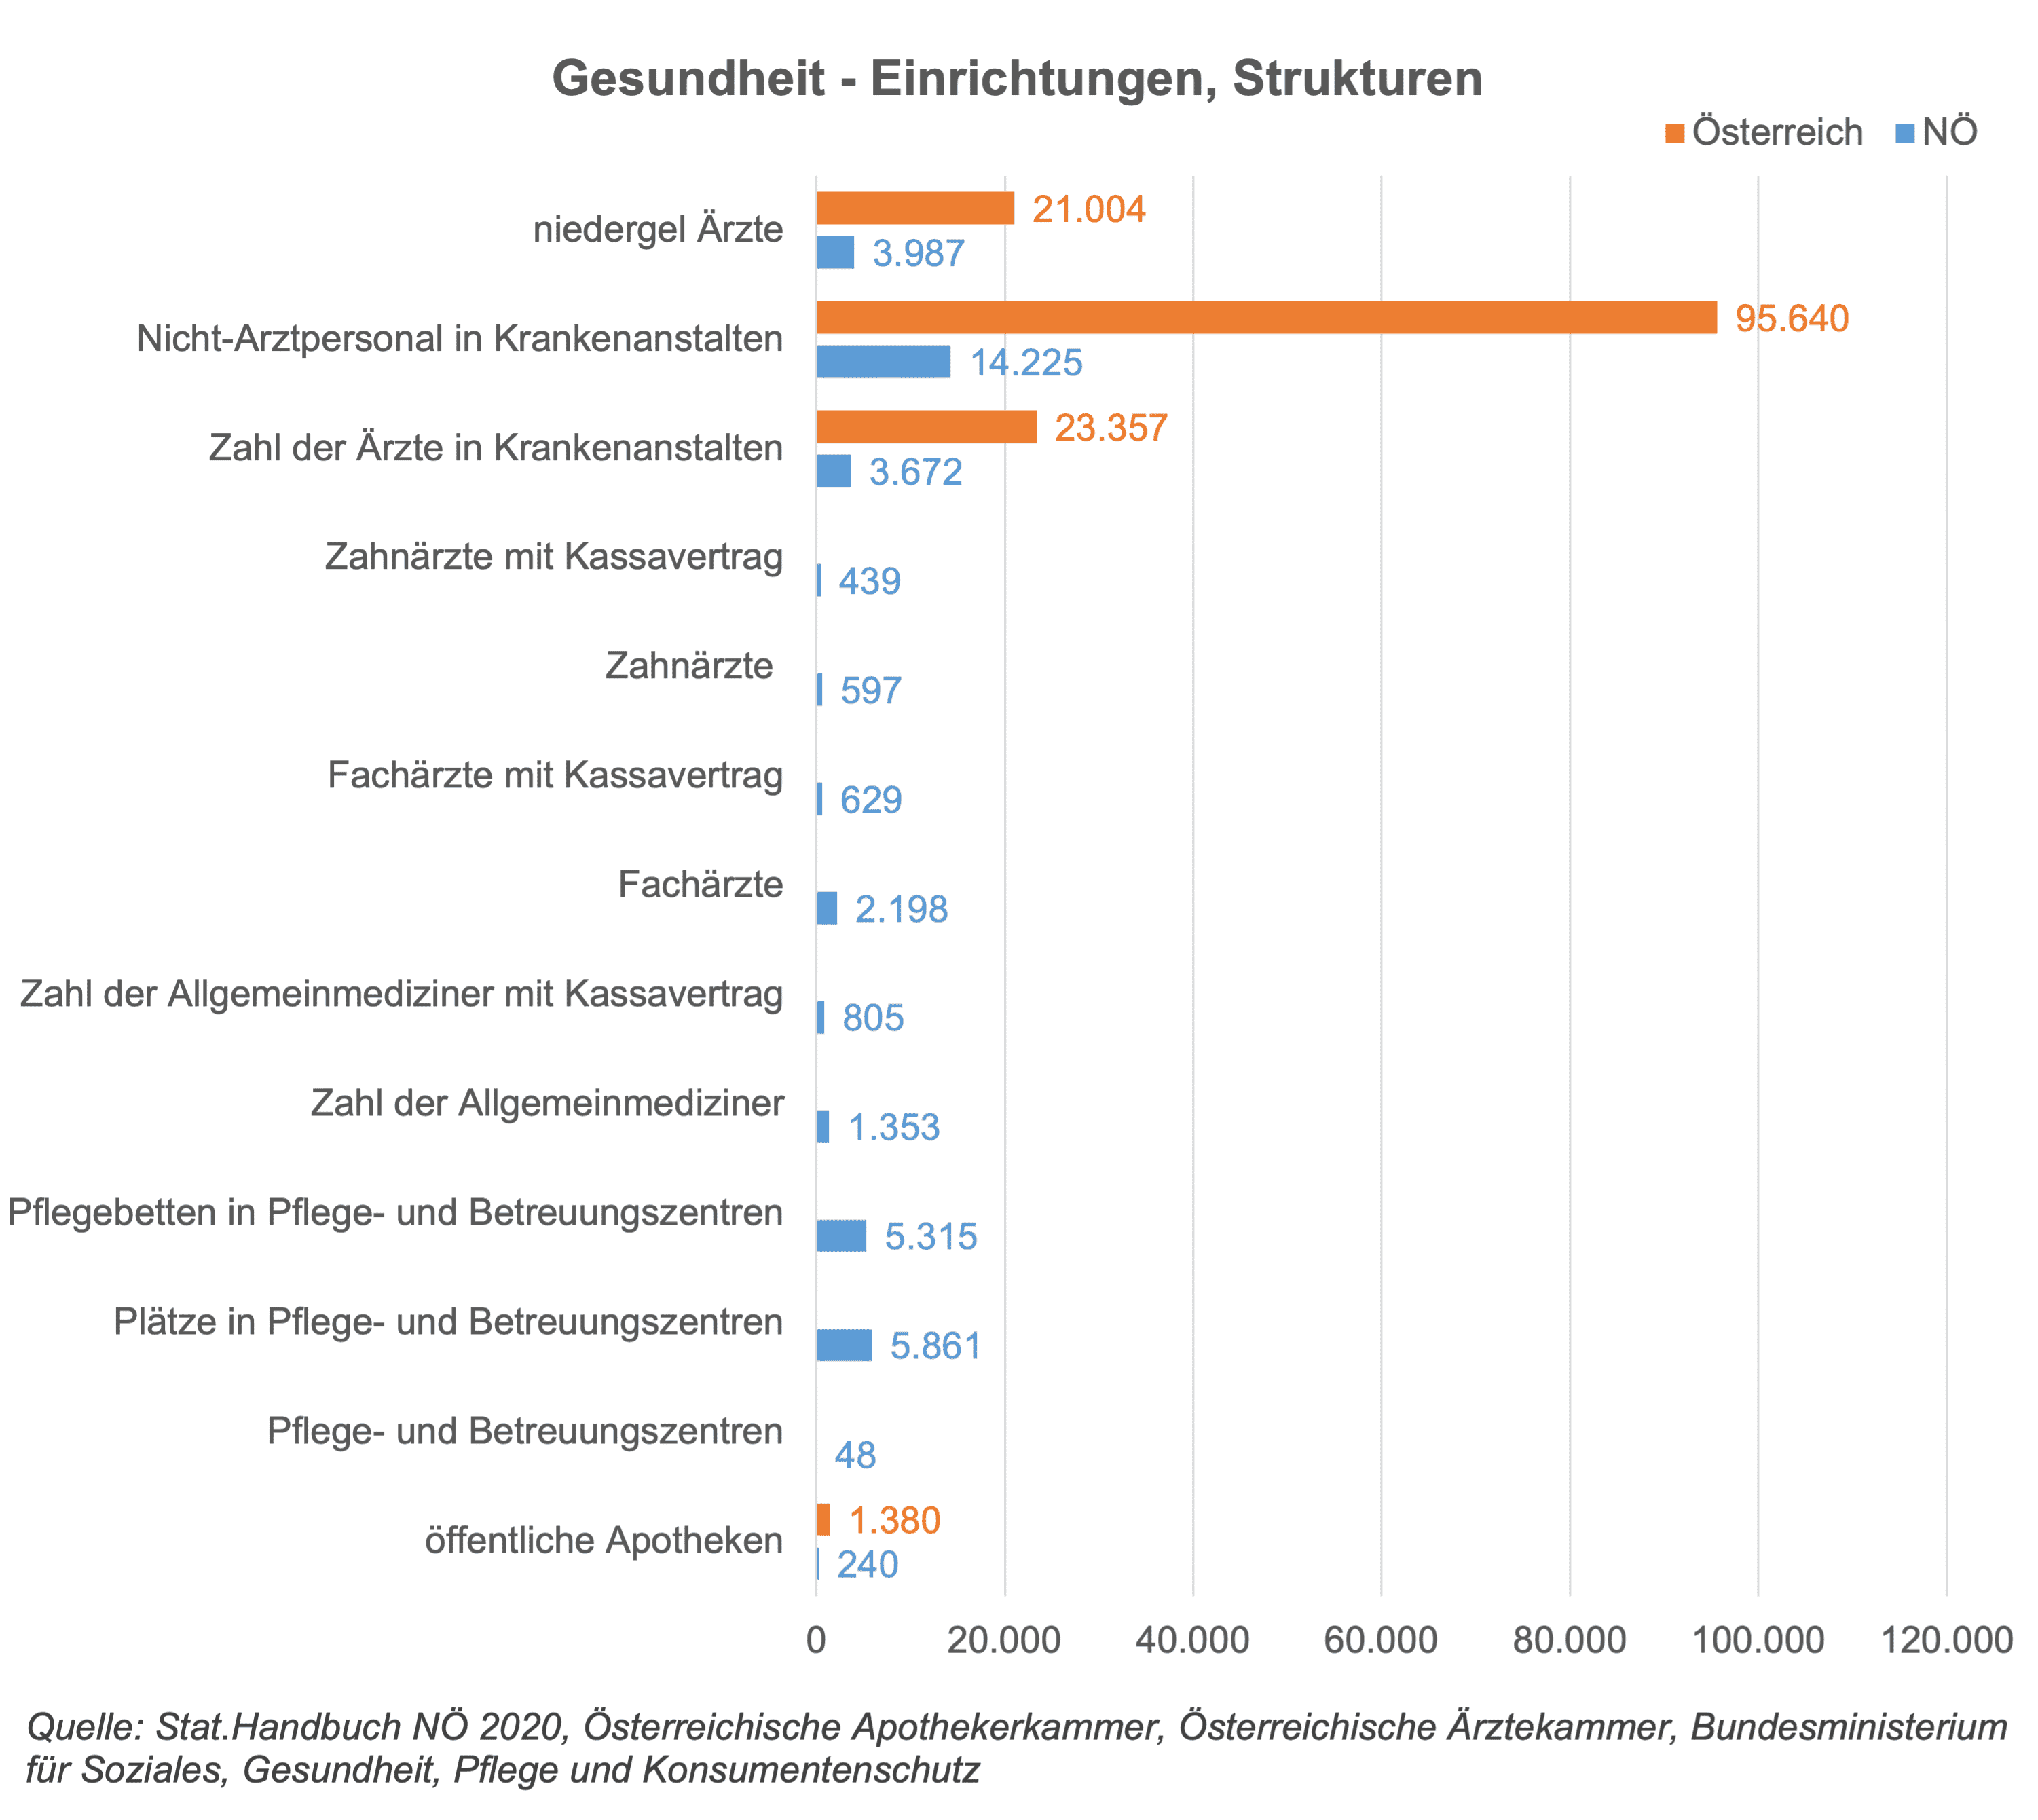 Die Stabgrafik zeigt die Anzahl an Gesundheitseinrichtungen und teils auch Personal in Österreich und Niederösterreich, 2020. NÖ hat zB. von den 21.000 niedergelassenen Ärzten in Österreich einen Anteil von 19% (ca. 4.000). 15% des Nicht-Arztpersonals in Krankenanstalten sind BürgerInnen aus NÖ. Ca. 16% der Ärzte in Krankenanstalten stammen aus Niederösterreich. Die Werte von NÖ liegen generell etwas niedriger als die Werte des Bundesdurchschnitts, was wieder durch die Flächenintensität und die geringe Bevölkerungsdichte bedingt ist. Die Zahl der Ärzte, jene der Krankenanstalten und der Betten pro 100.000 Einwohner liegen um etwa 10 % niedriger, während die Gesundheitsausgaben um etwa 20 % unter dem Durchschnitt liegen. Allerdings hat Österreich im Vergleich zu den EU-Ländern hier ein sehr gut ausgestattetes Gesundheitssystem, wie auch die Corona-Pandemie gezeigt hat.